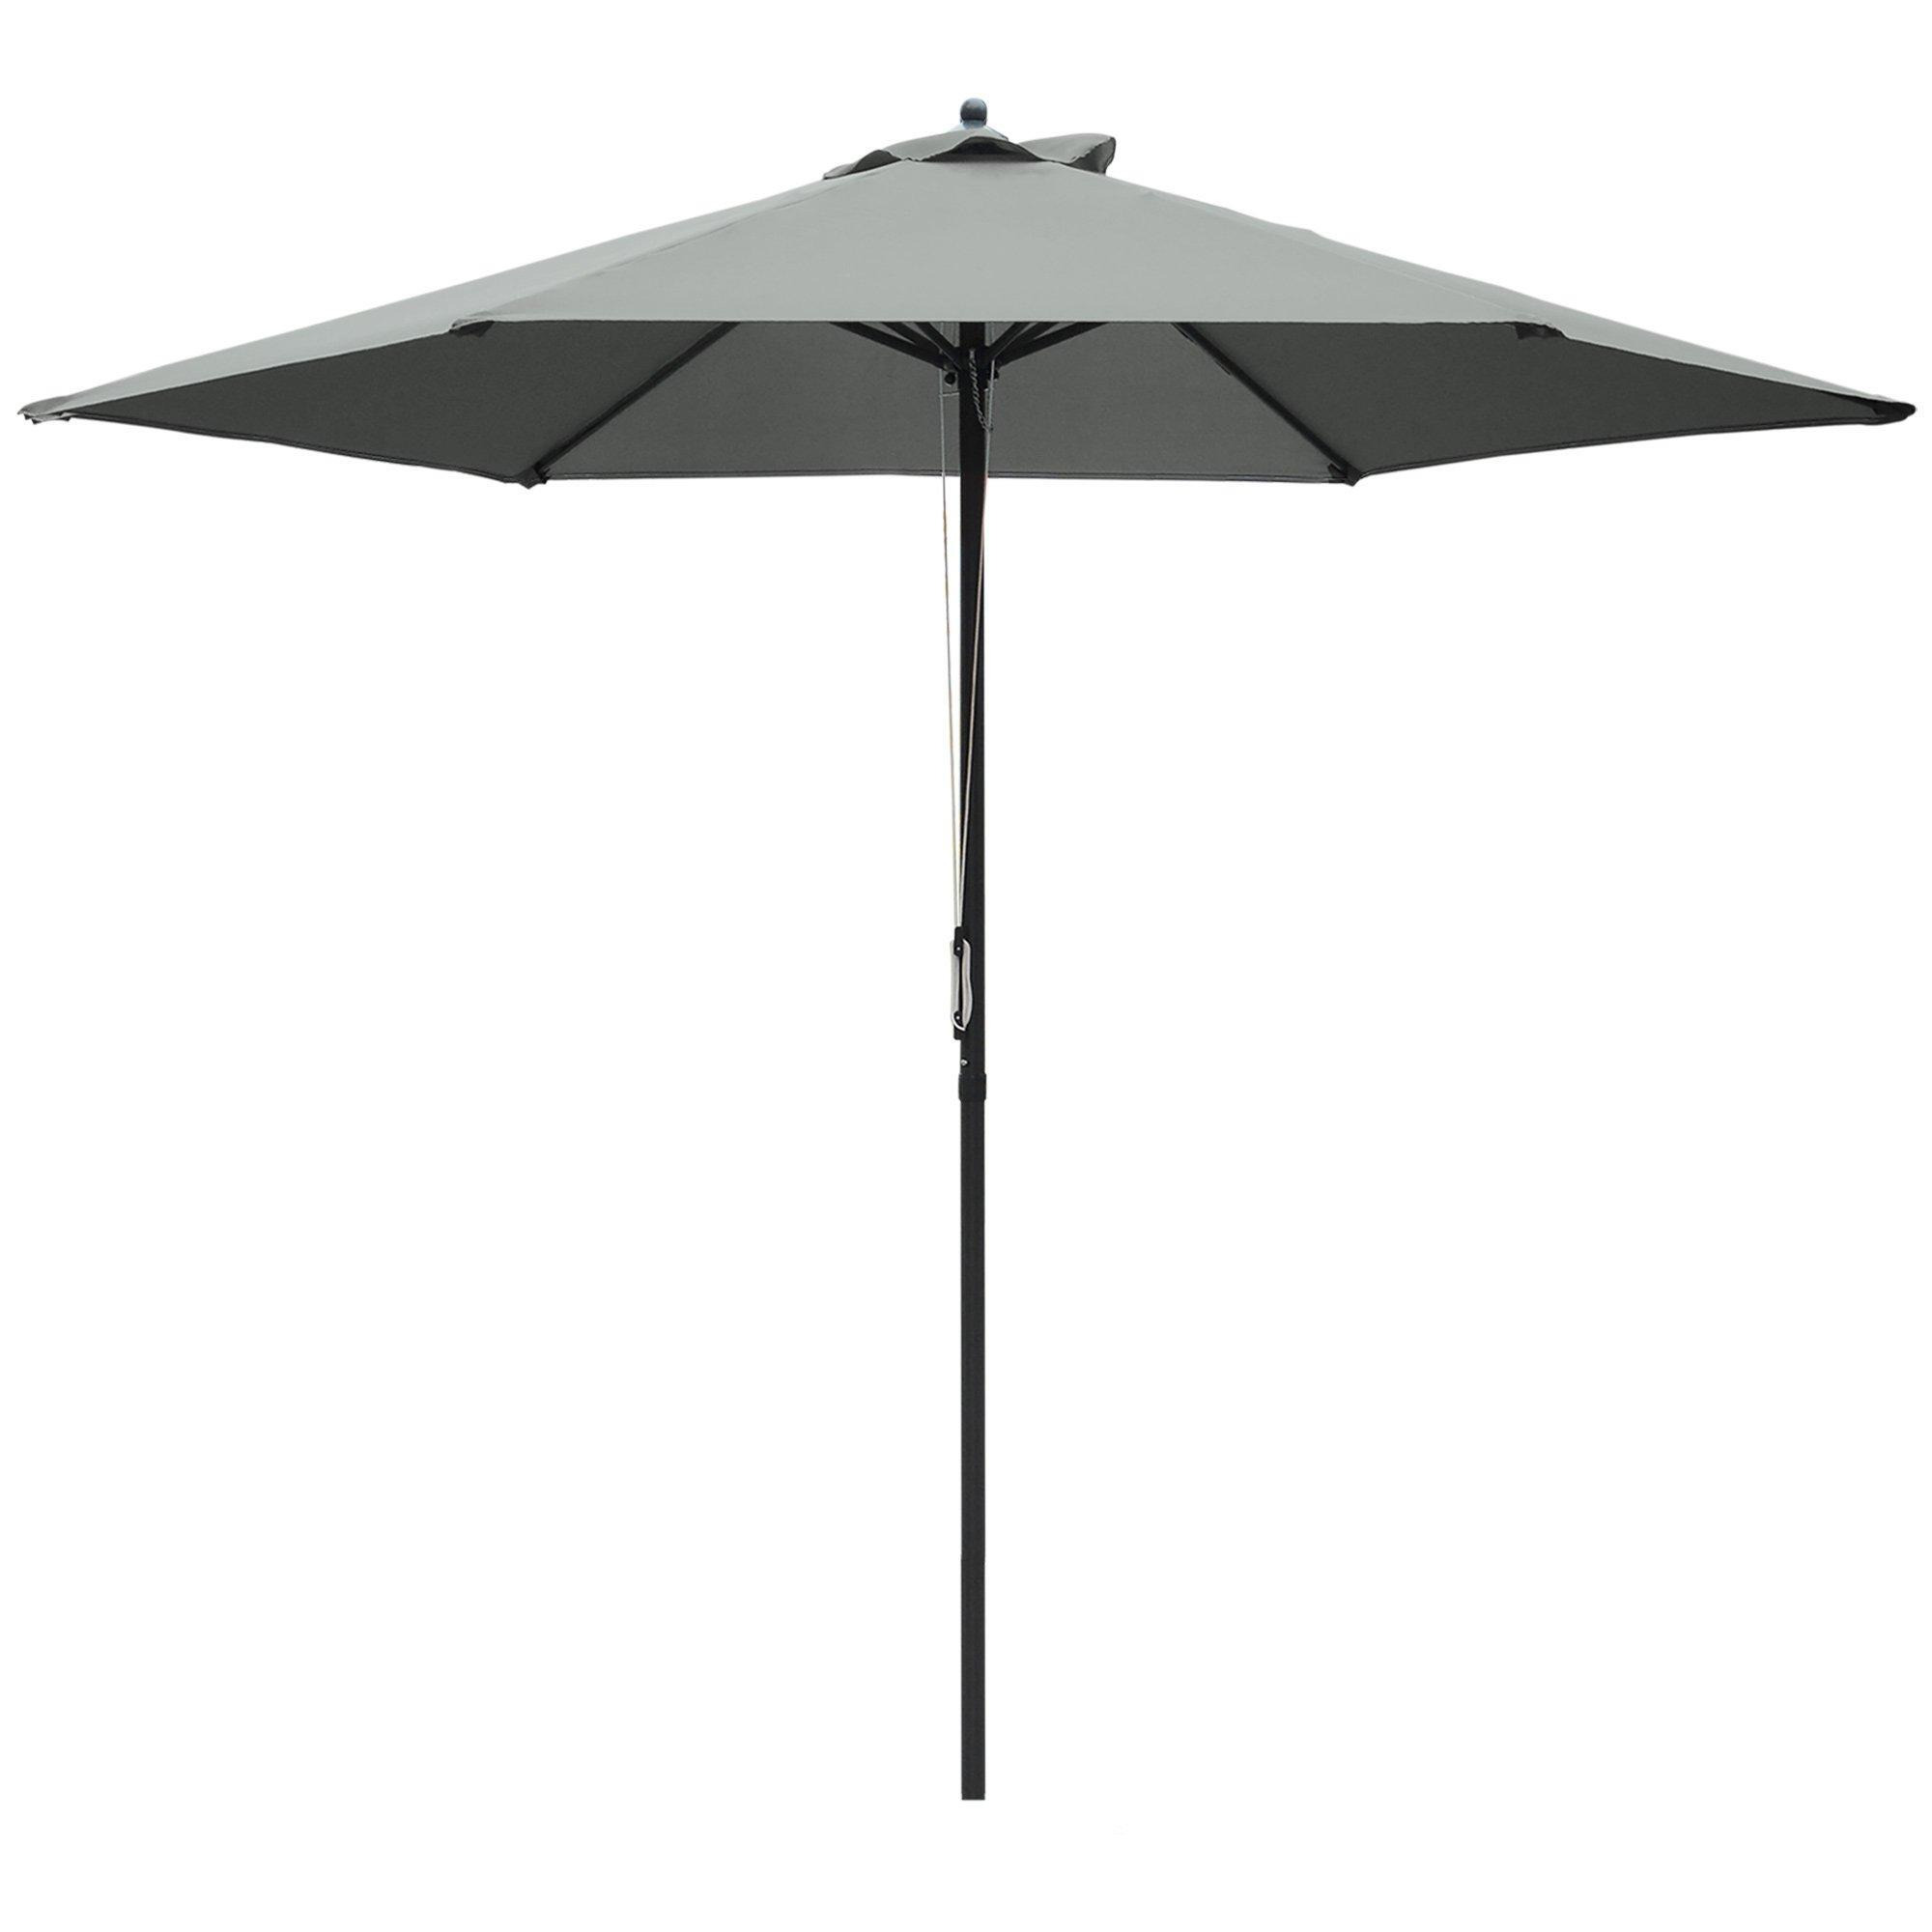 2.8m Patio Umbrella Parasol Outdoor Table Umbrella 6 Ribs - image 1